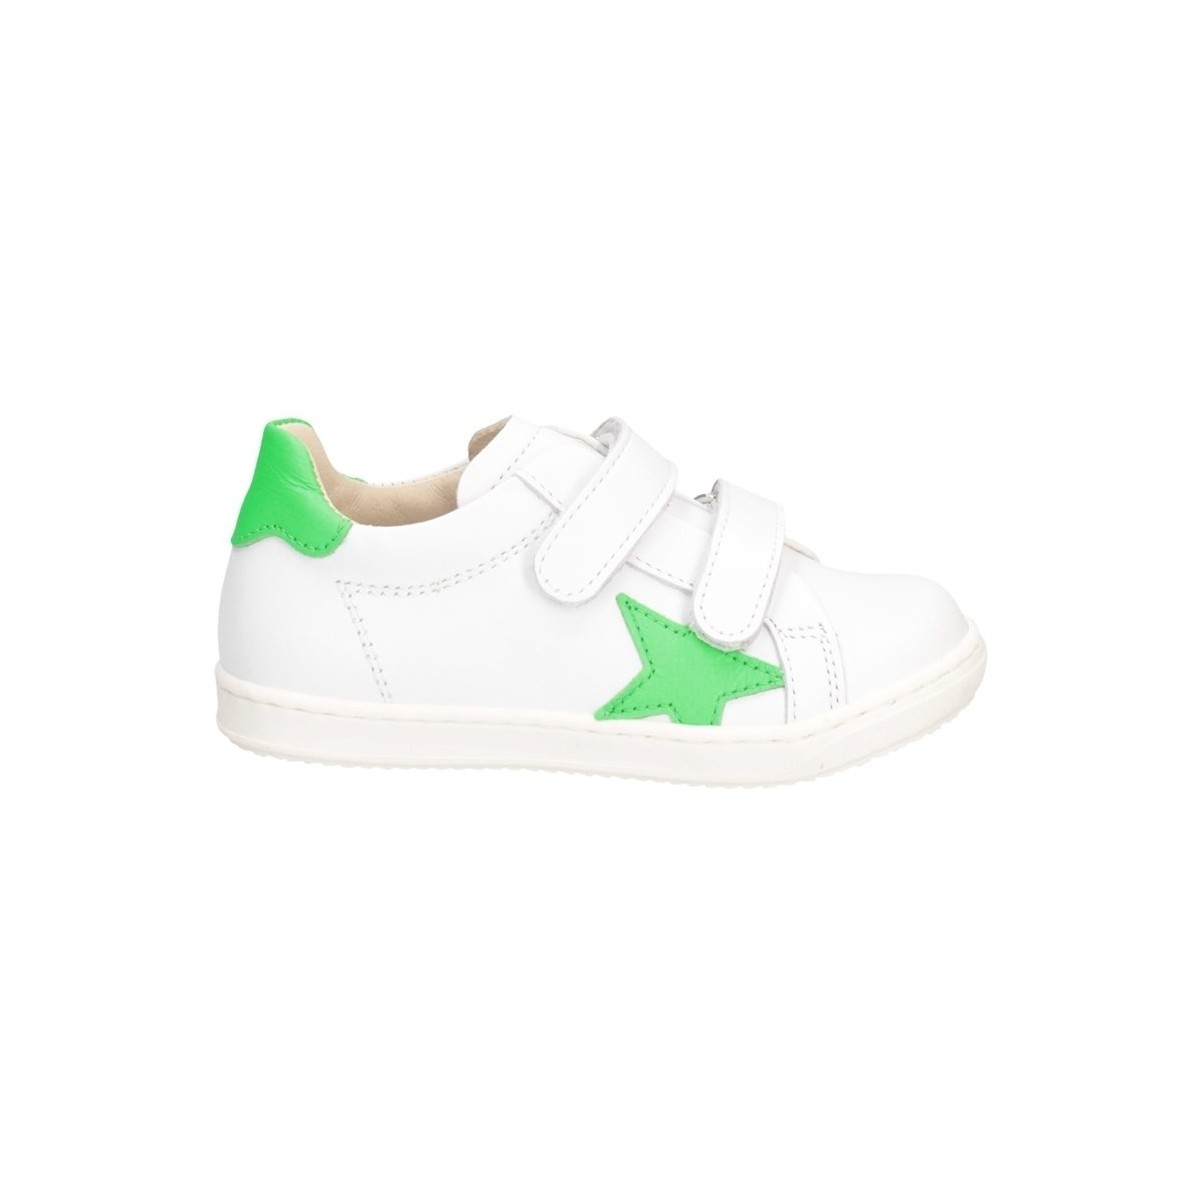 Scarpe Bambino Sneakers basse Gioiecologiche 5561 Sneakers Bambino Bianco/verde Multicolore